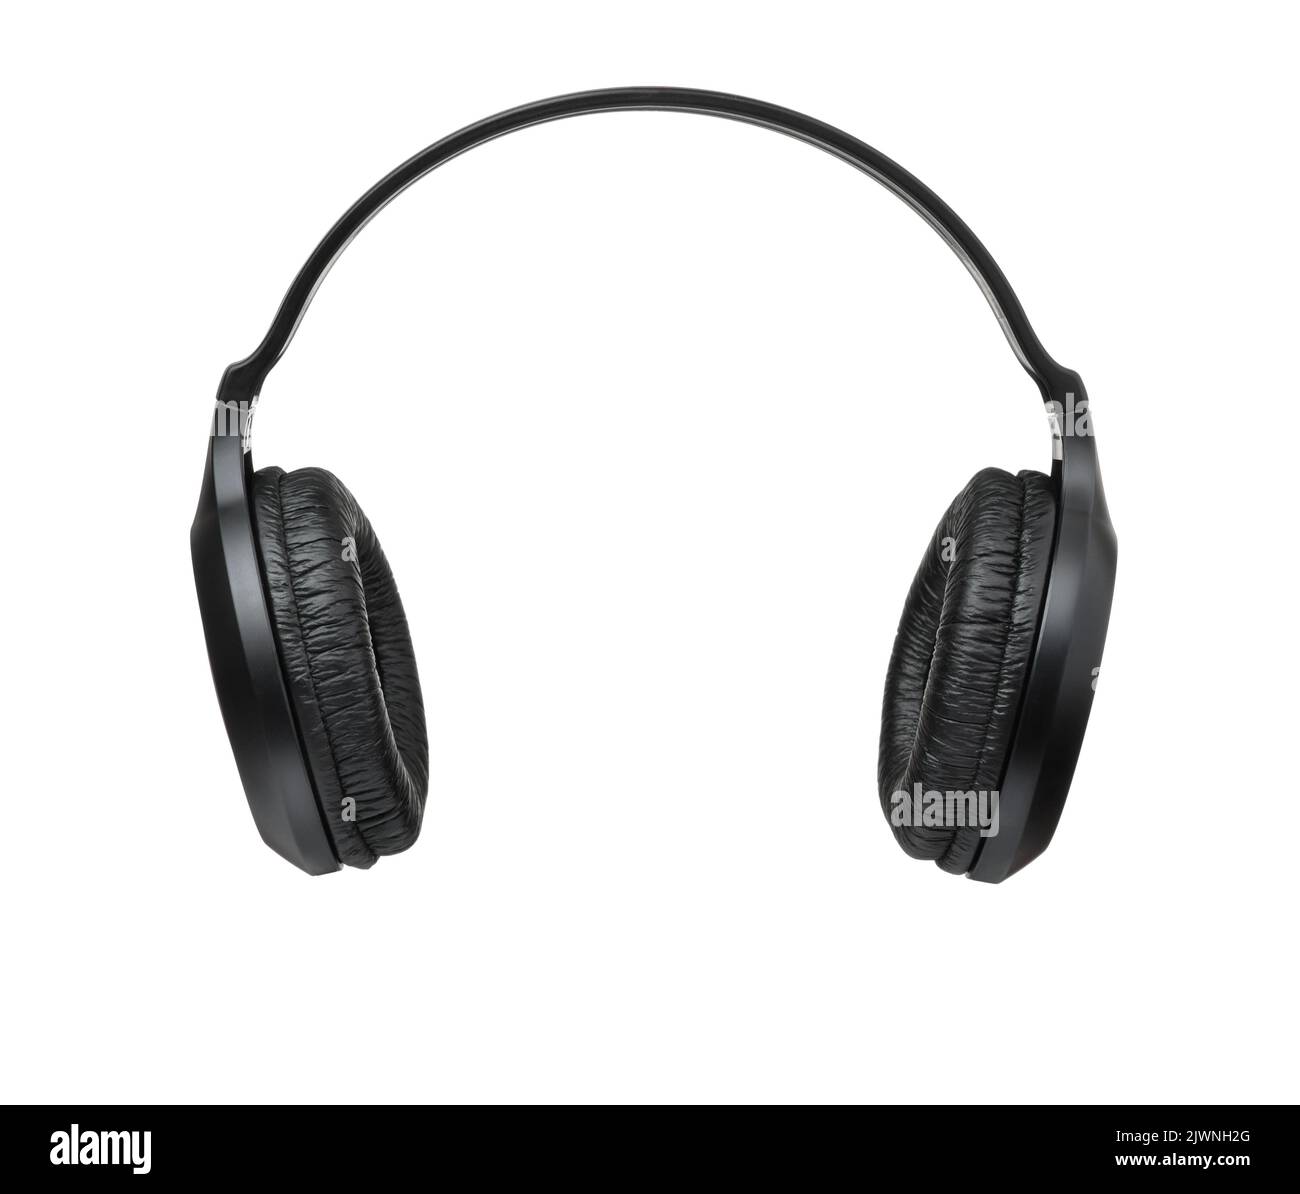 Vista frontal de los auriculares supra-aurales inalámbricos negros aislados sobre blanco Foto de stock